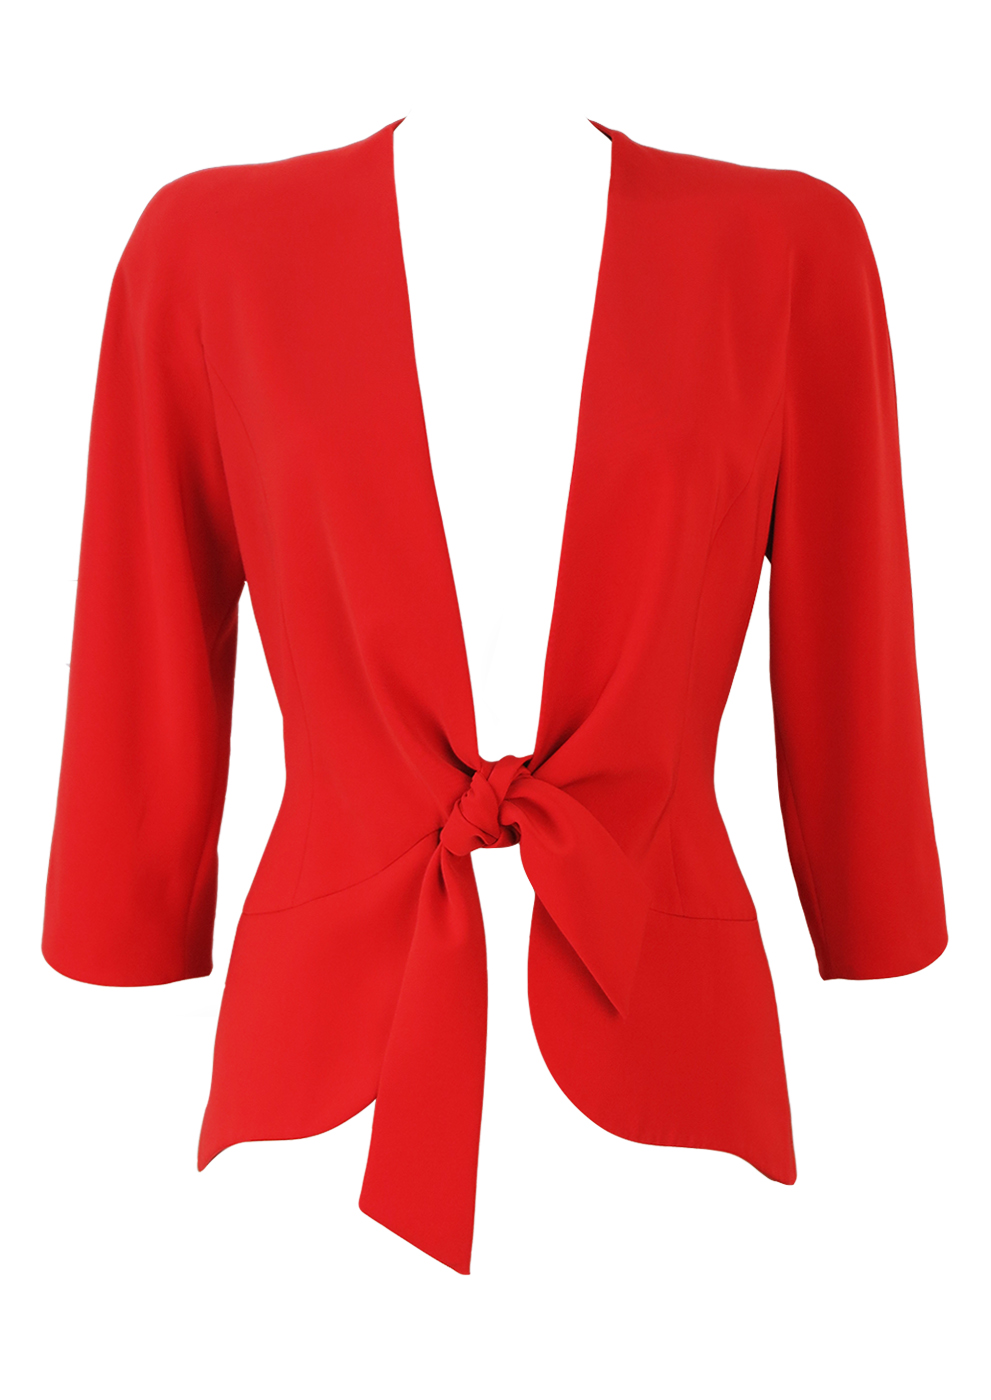 Orange Red Tie Front Jacket with Curved Hem - S/M | Reign Vintage